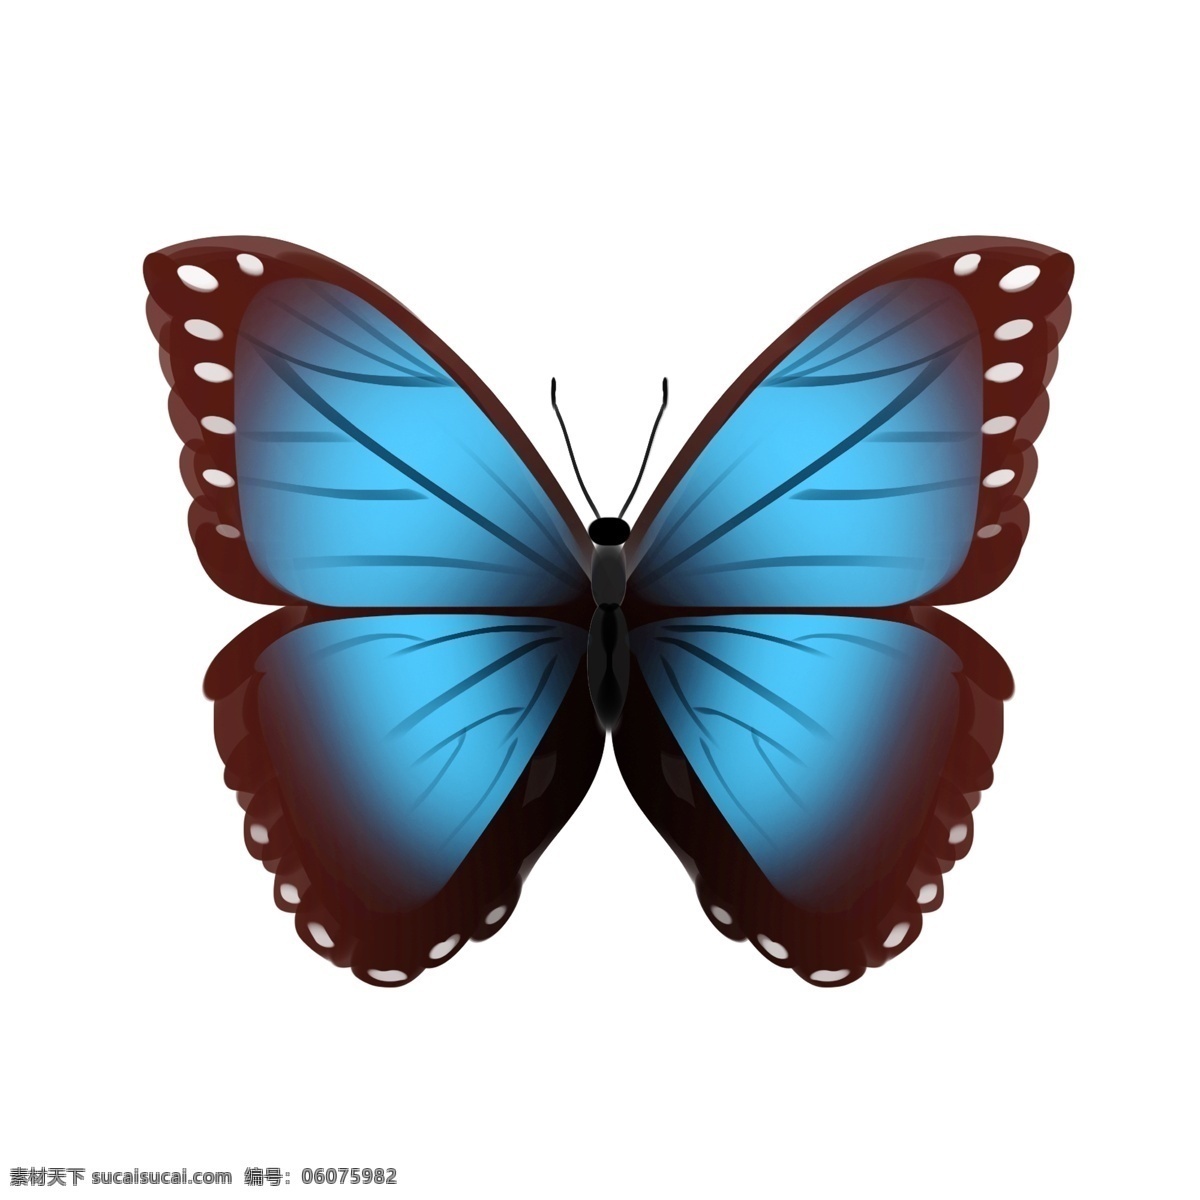 蓝黑色 蝴蝶 插画 蓝色的翅膀 卡通插画 动物插画 蝴蝶插画 动物蝴蝶 昆虫 益虫 大大的翅膀